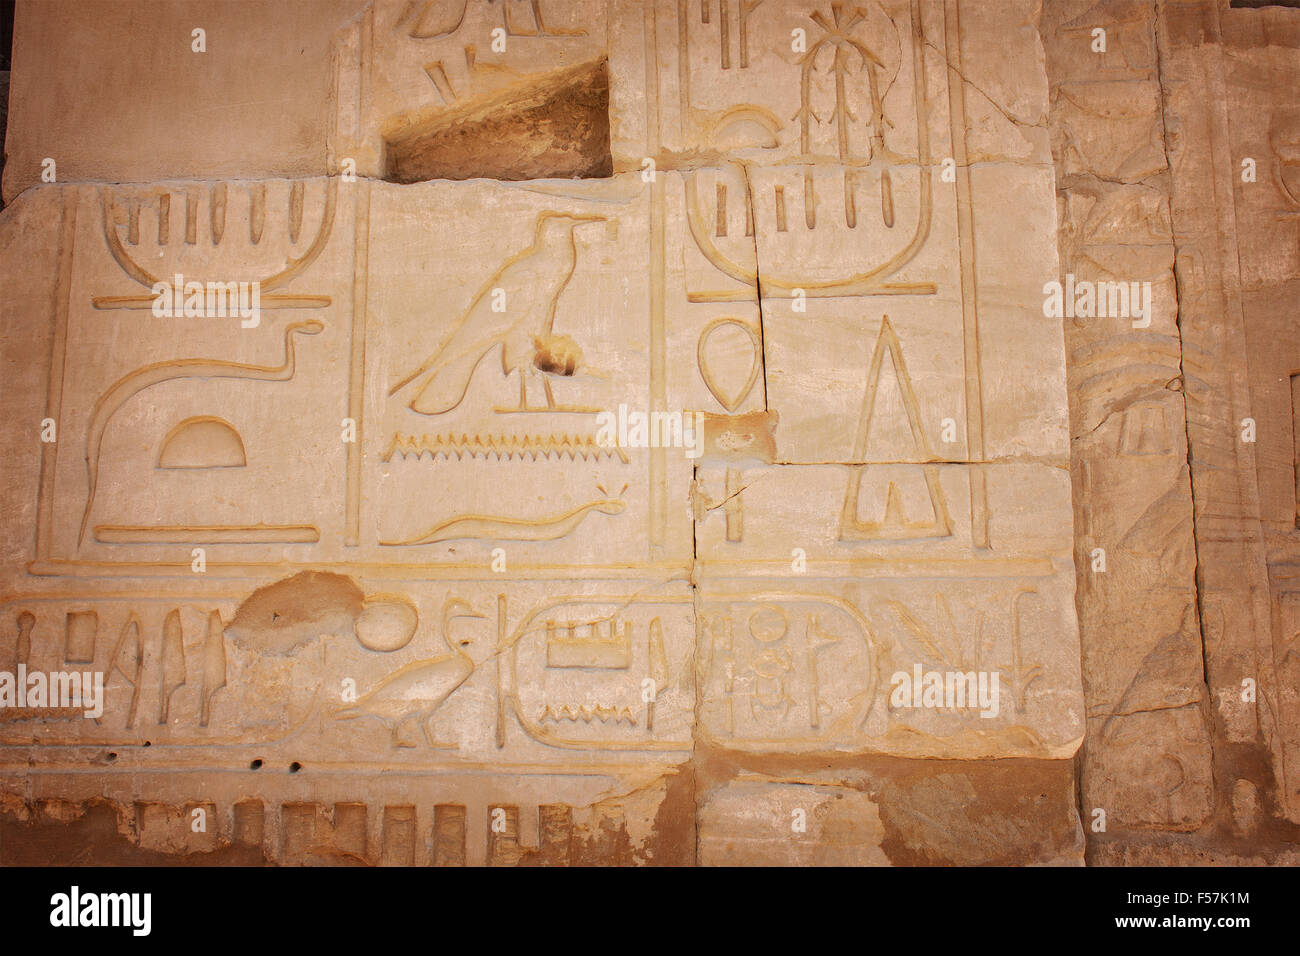 Bild der geschnitzten Bilder im Tempel von Karnak, Ägypten. Stockfoto